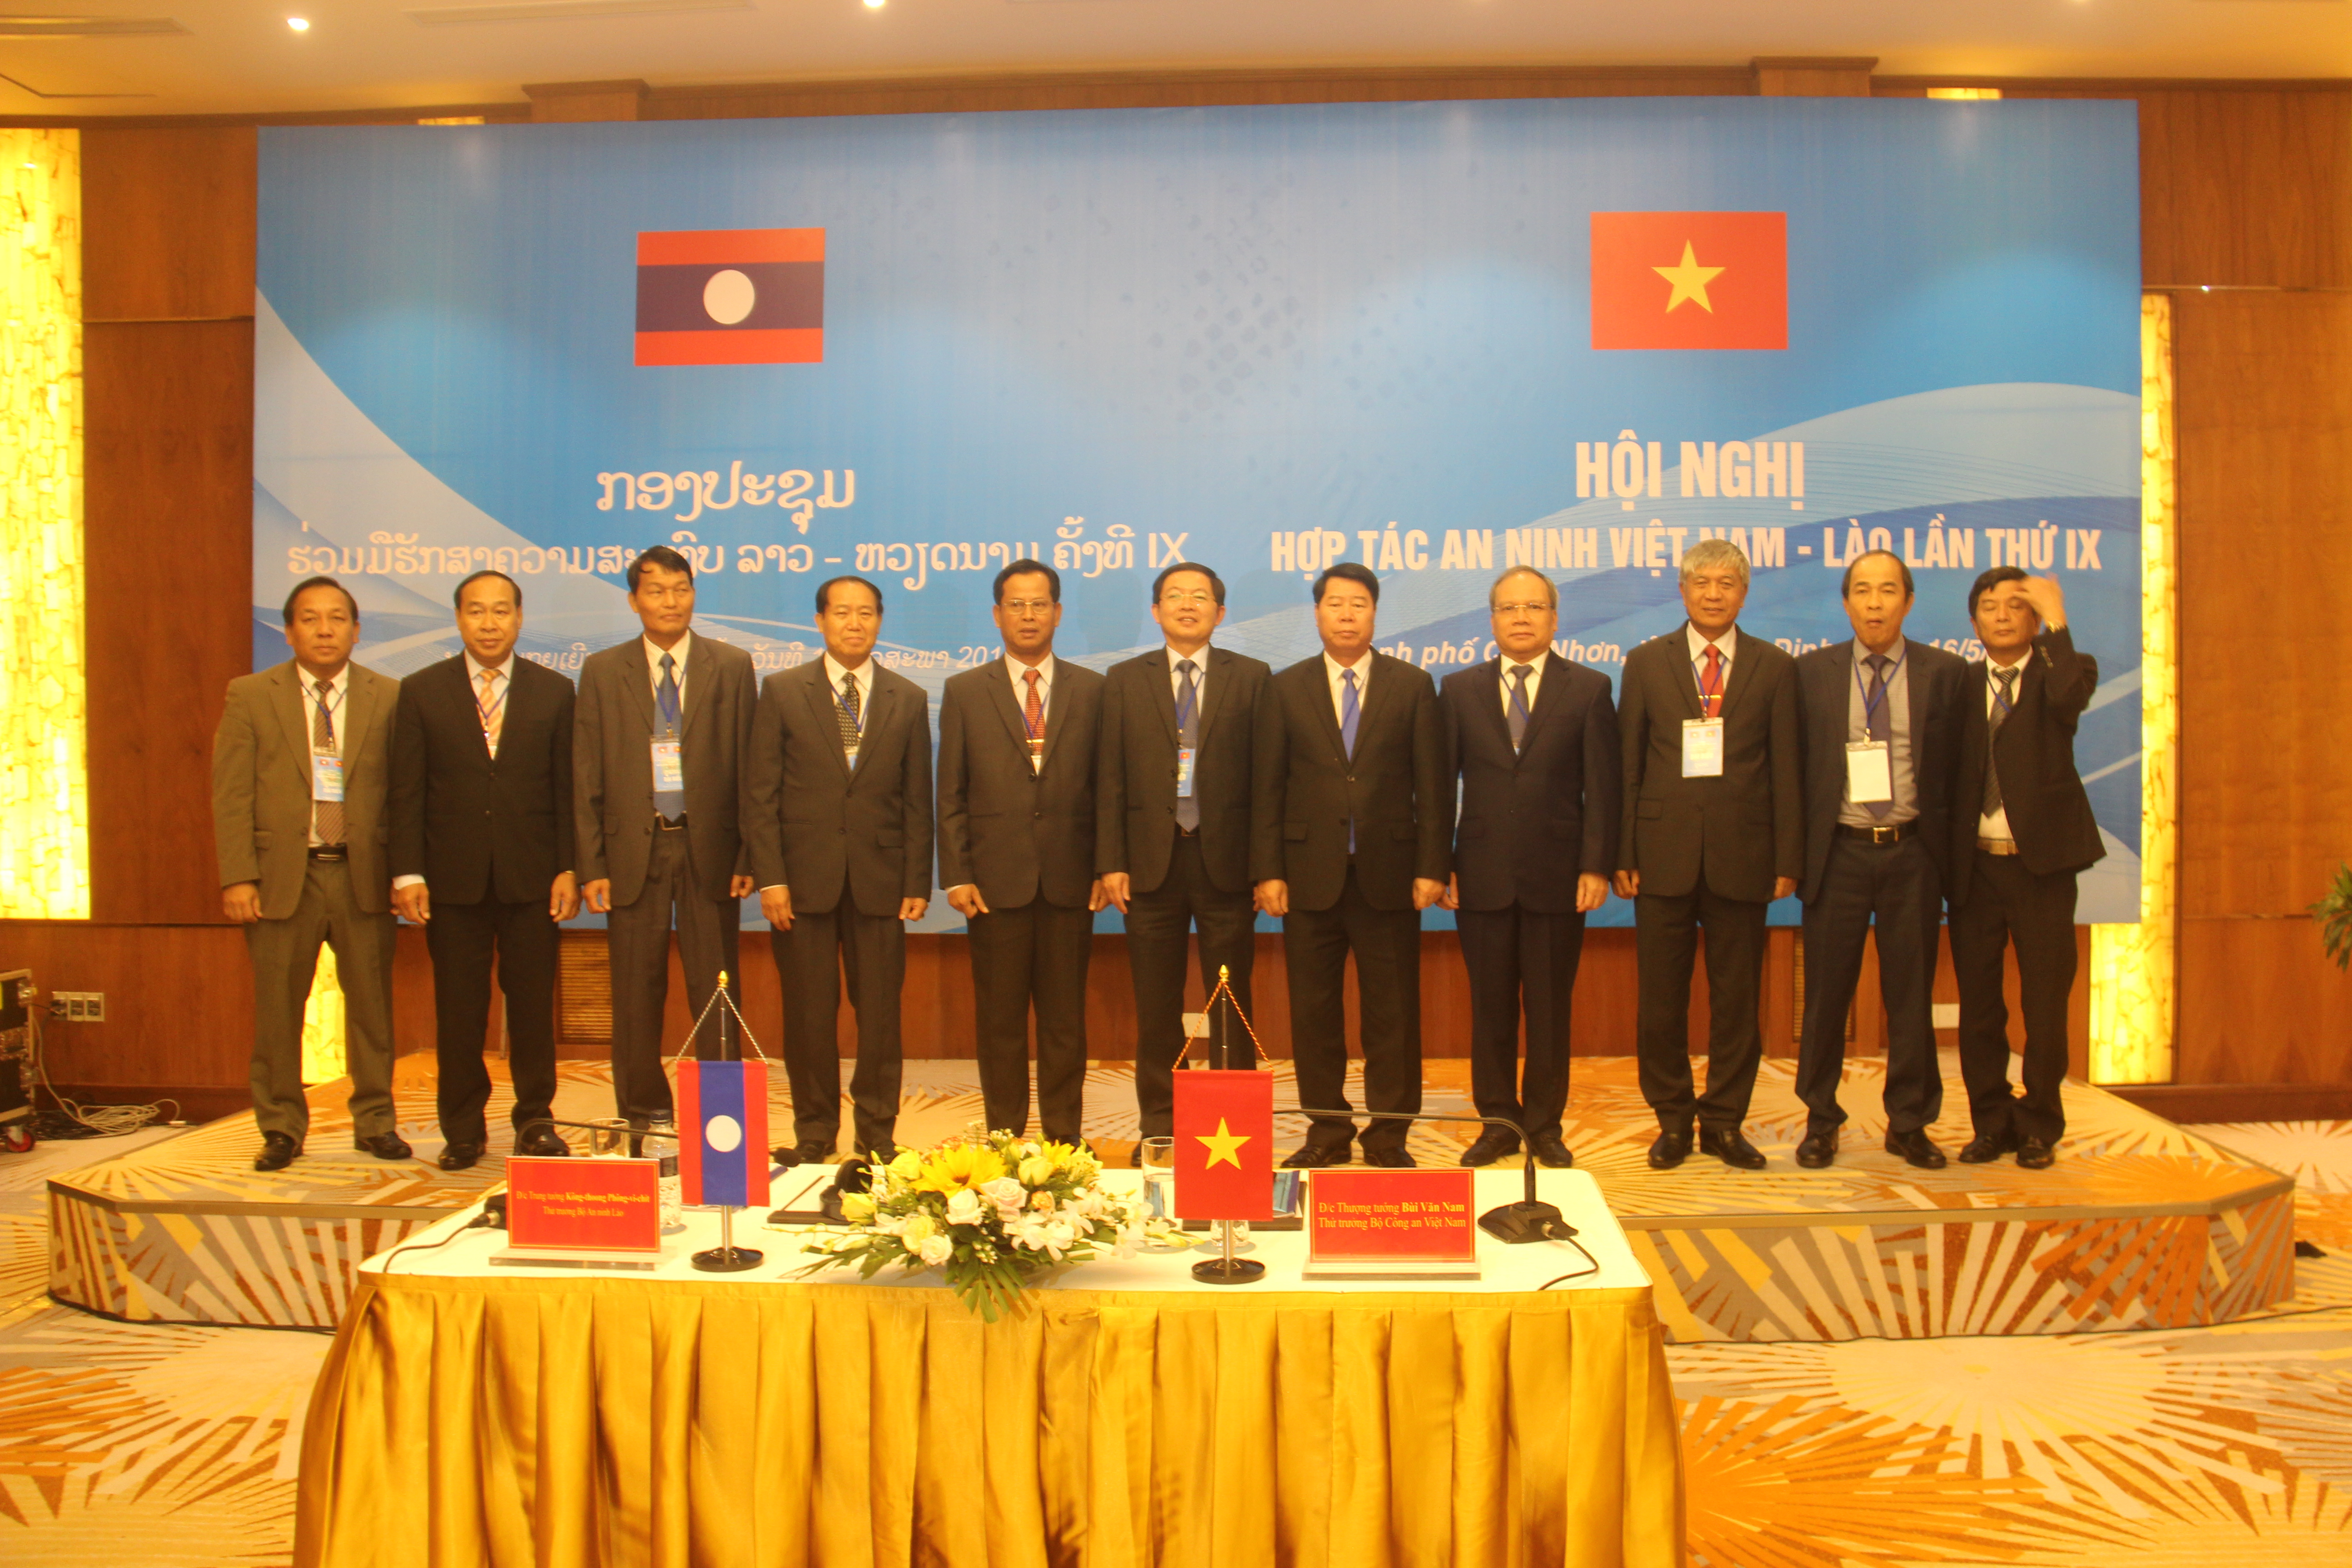 Hội nghị hợp tác an ninh Việt Nam - Lào lần thứ IX